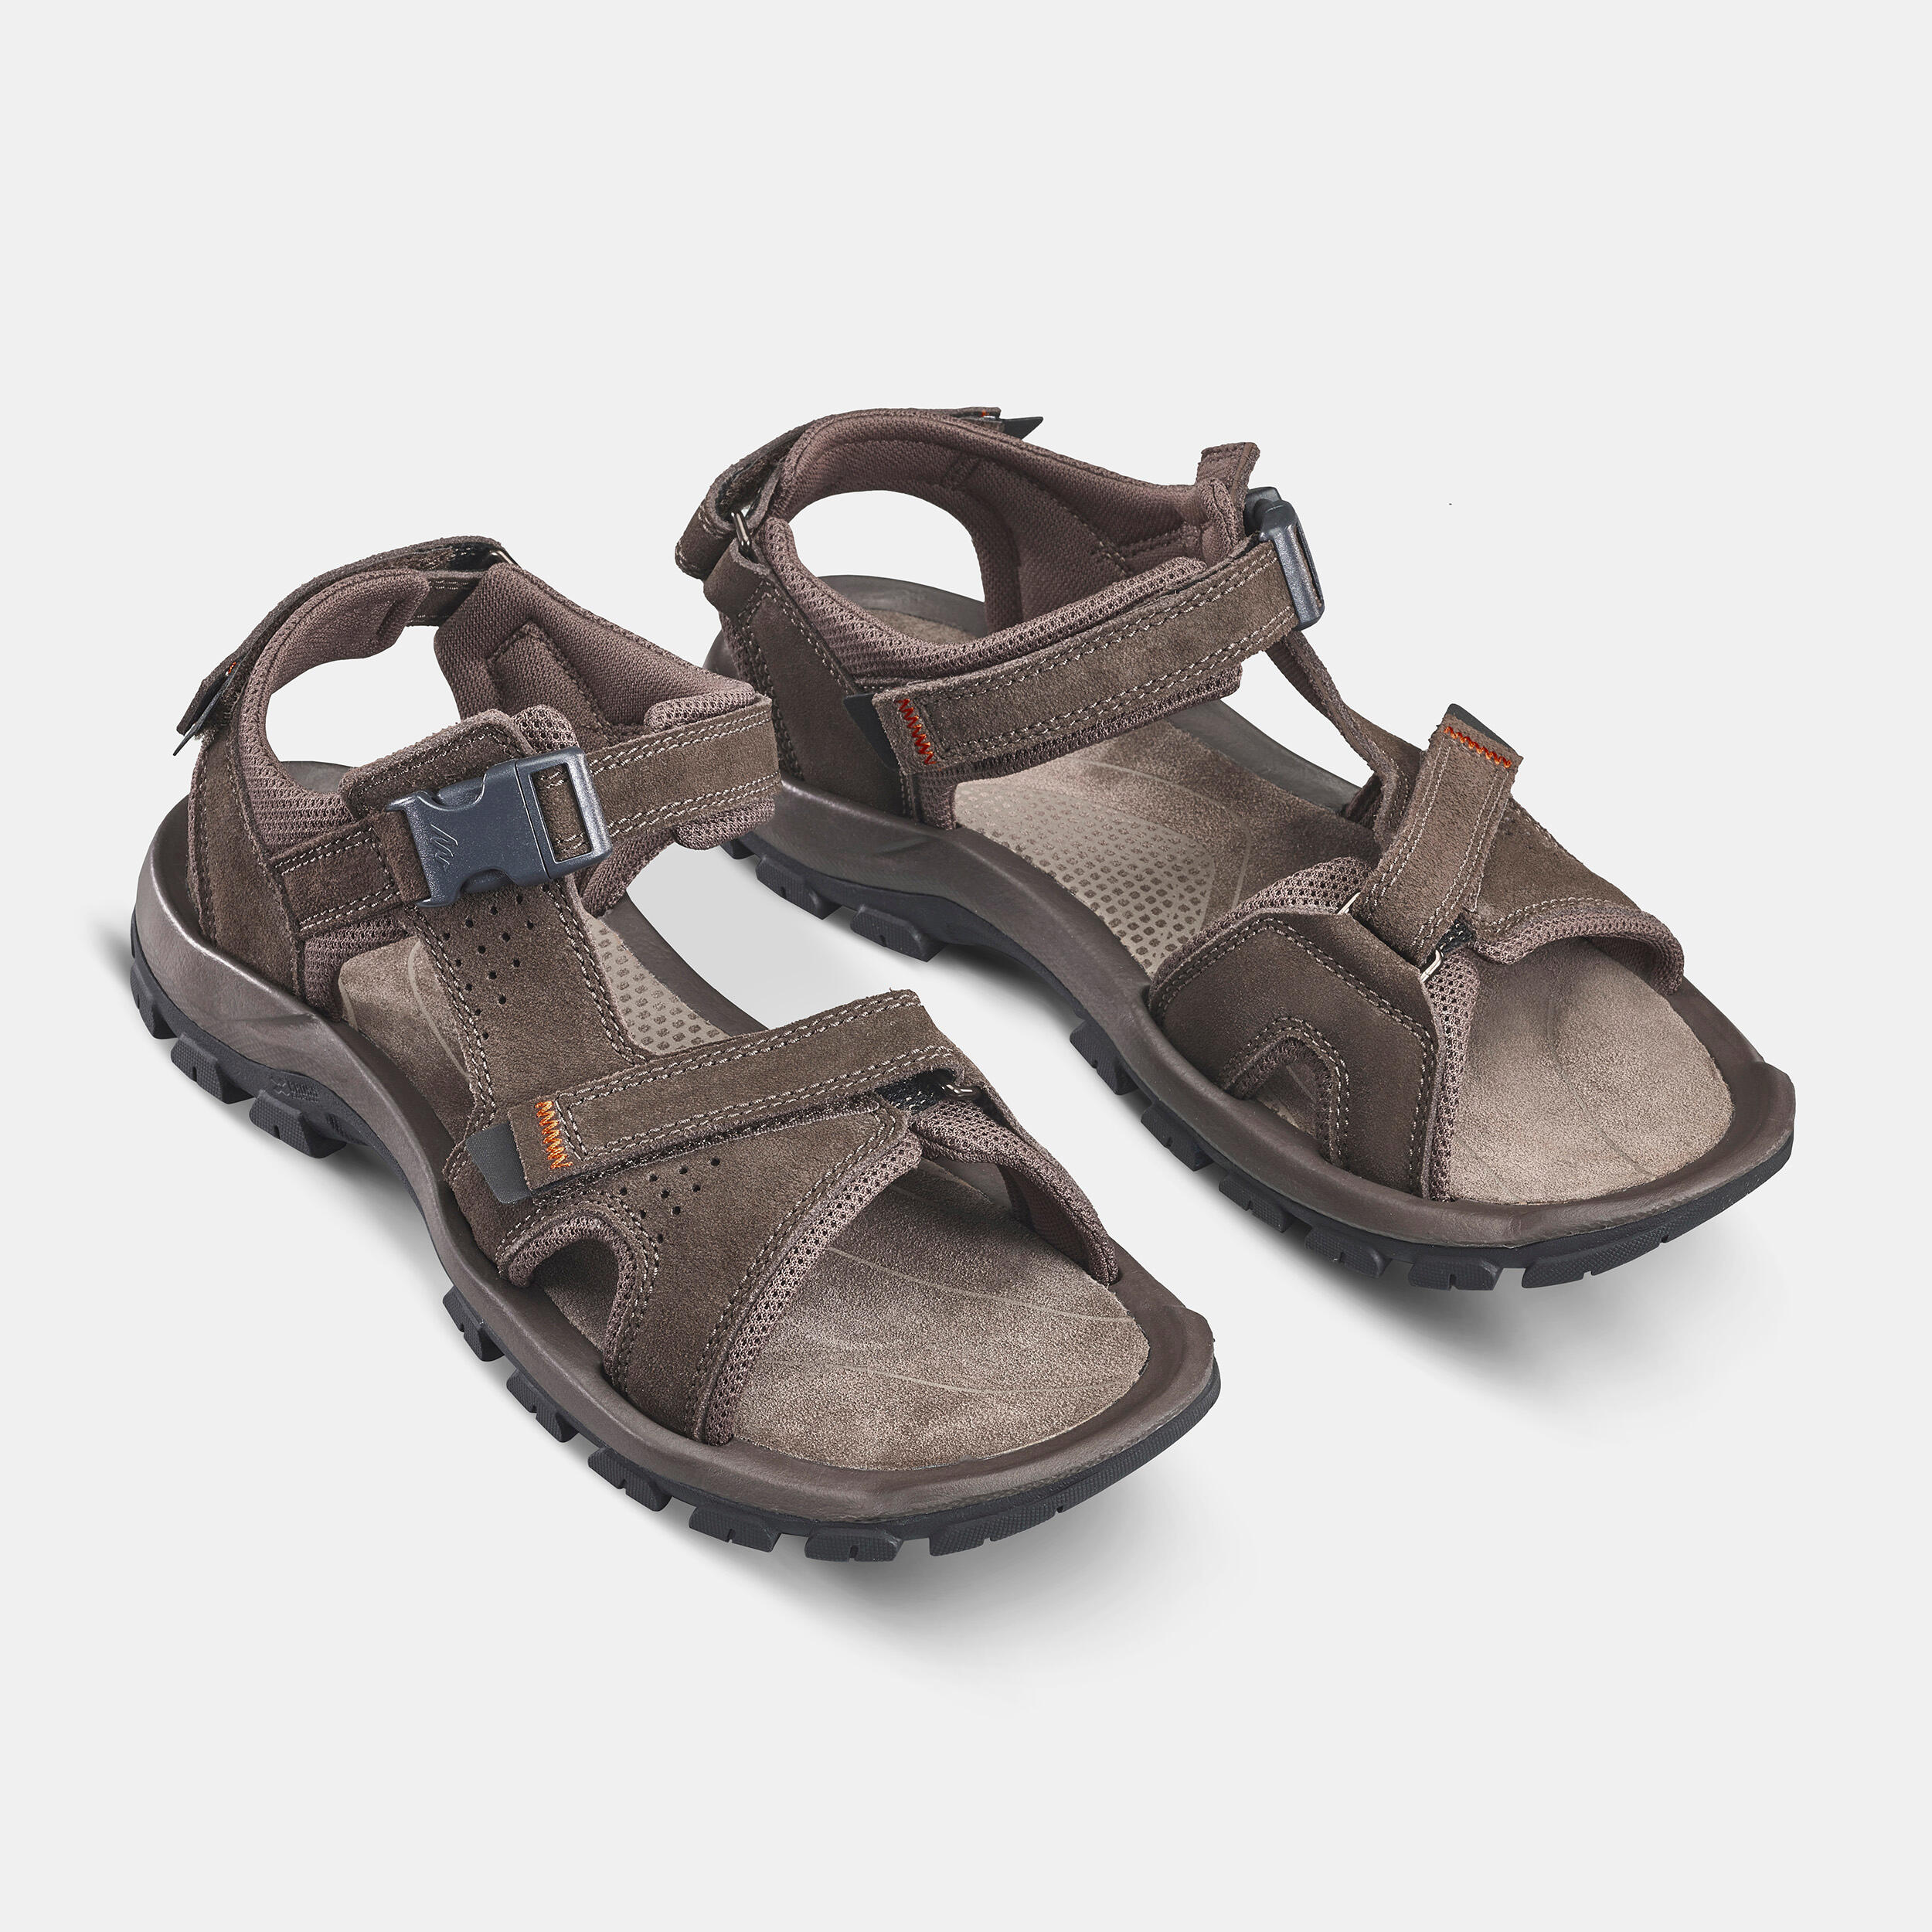 Sandales de randonnée en cuir homme – NH 500 - QUECHUA